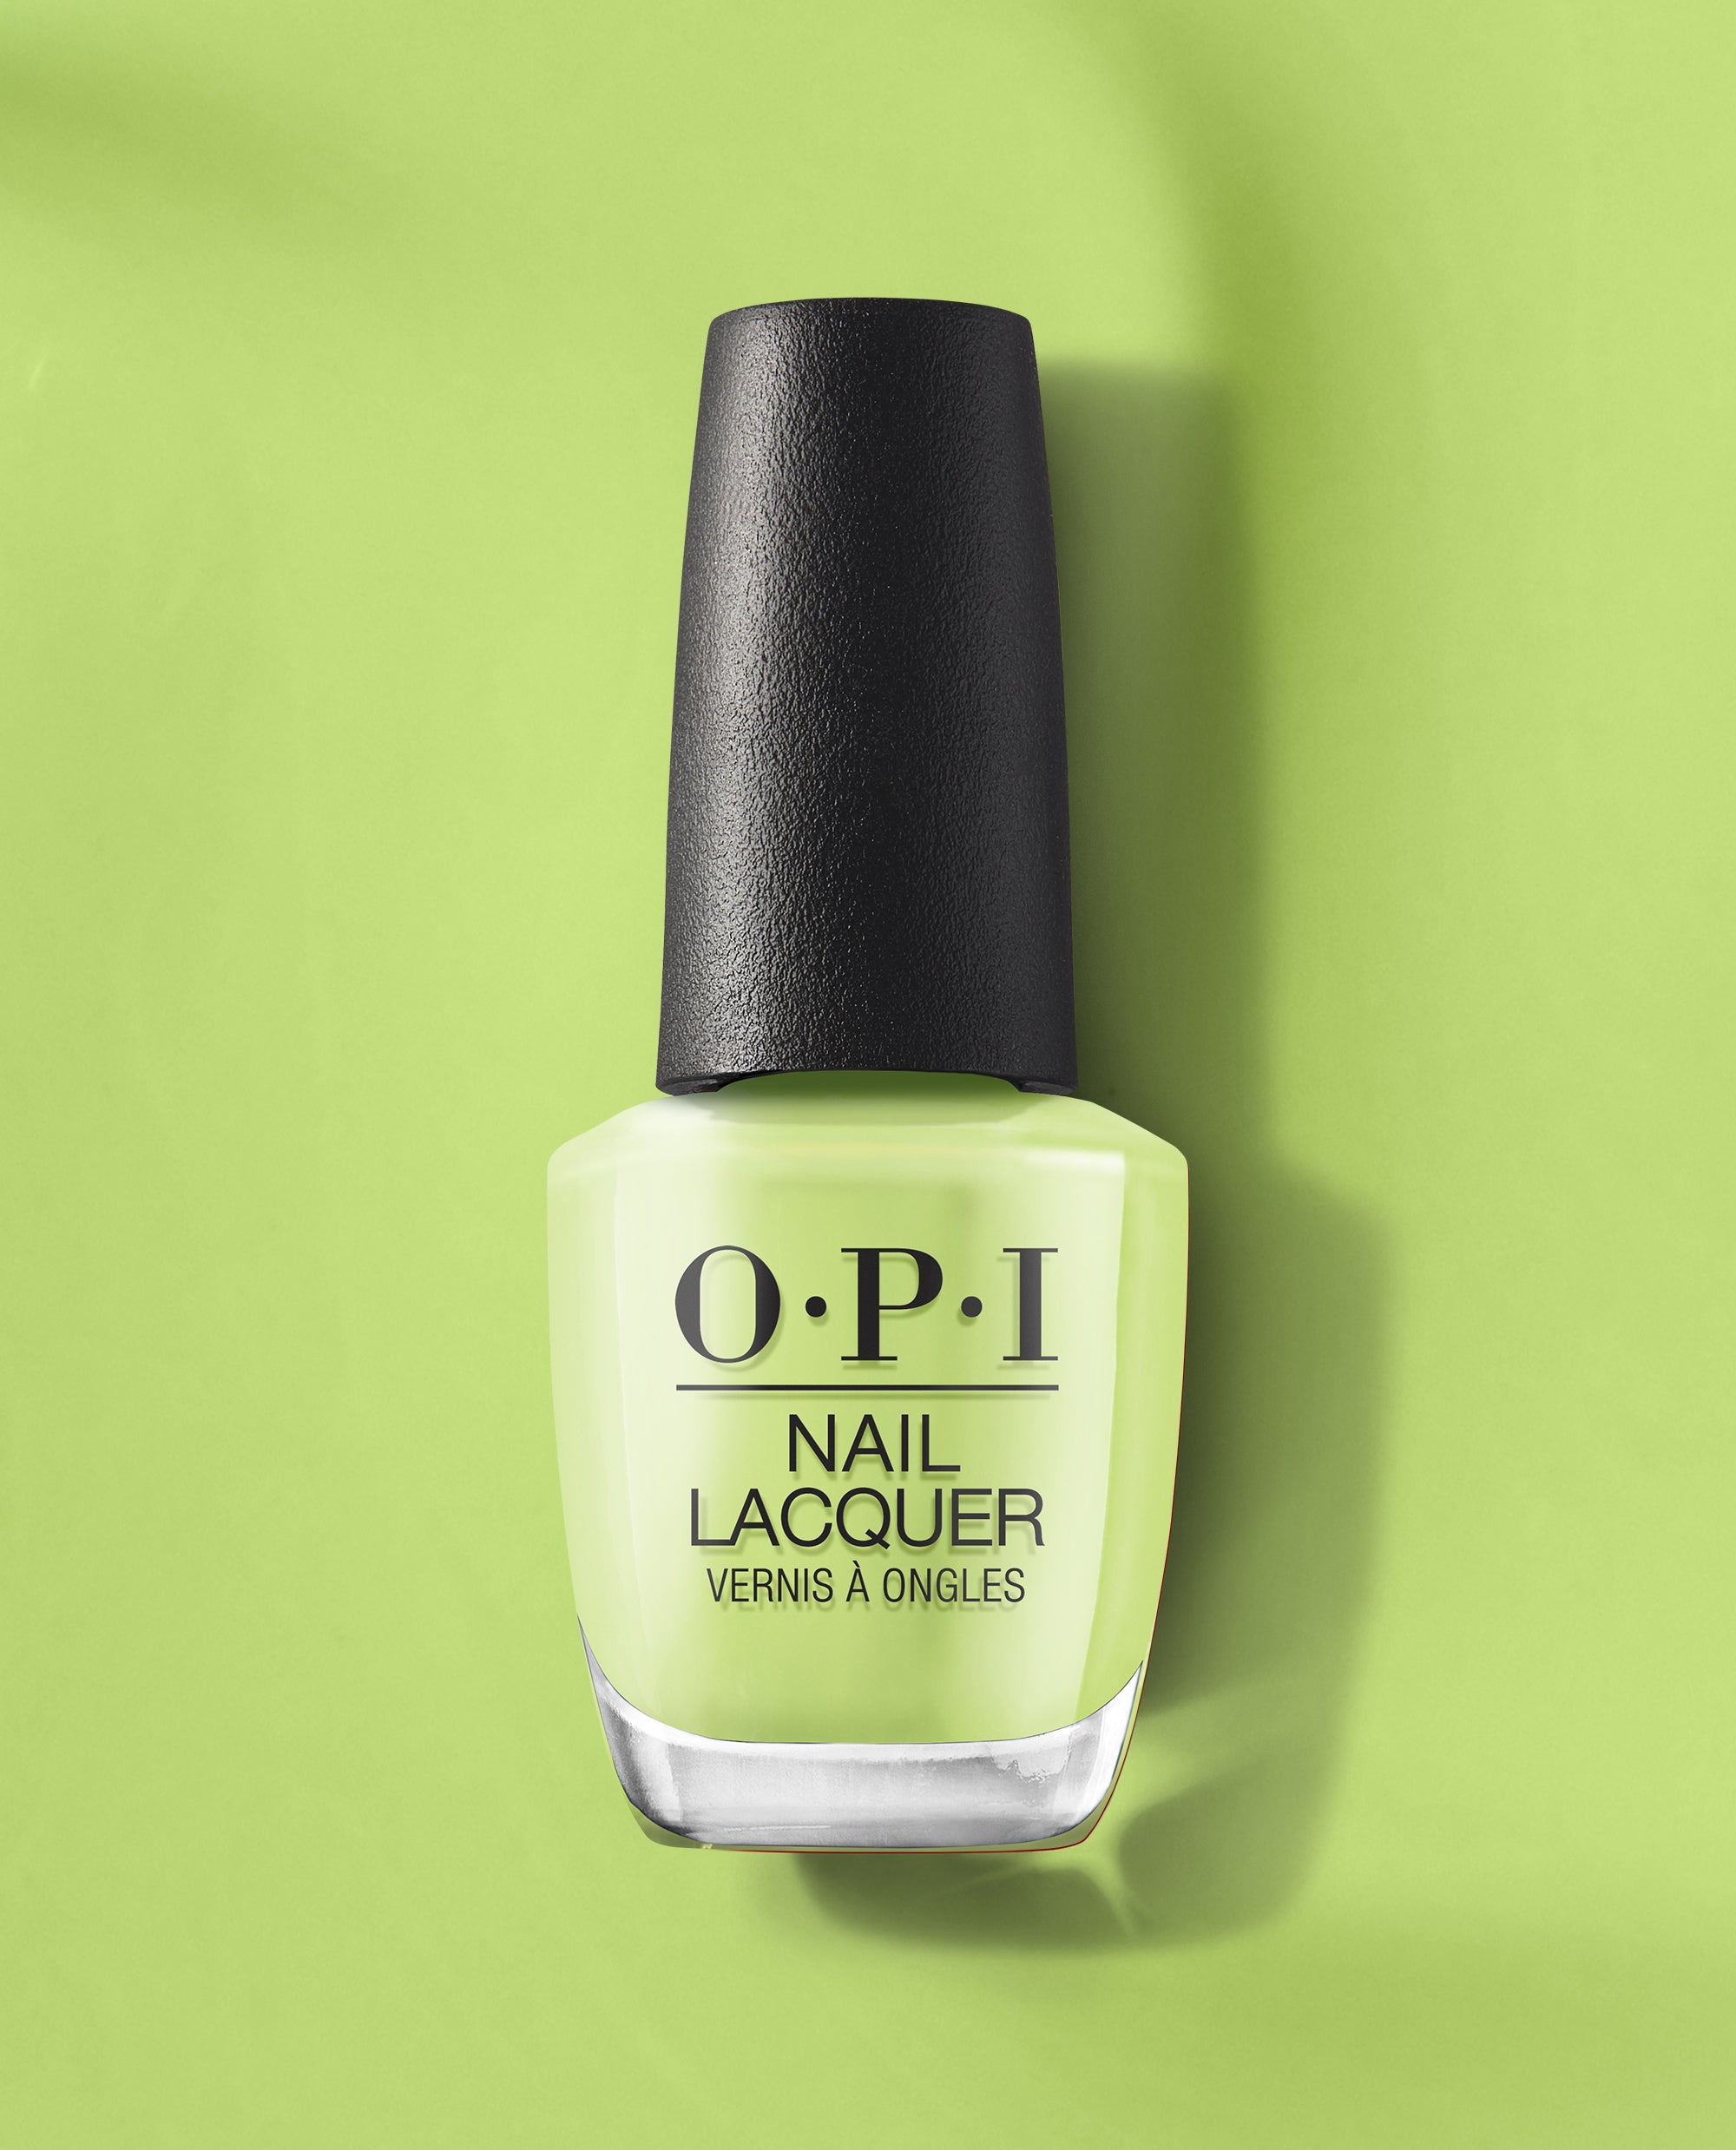 Green Come True - Nail Lacquer | Vivid Green Nail Polish | OPI